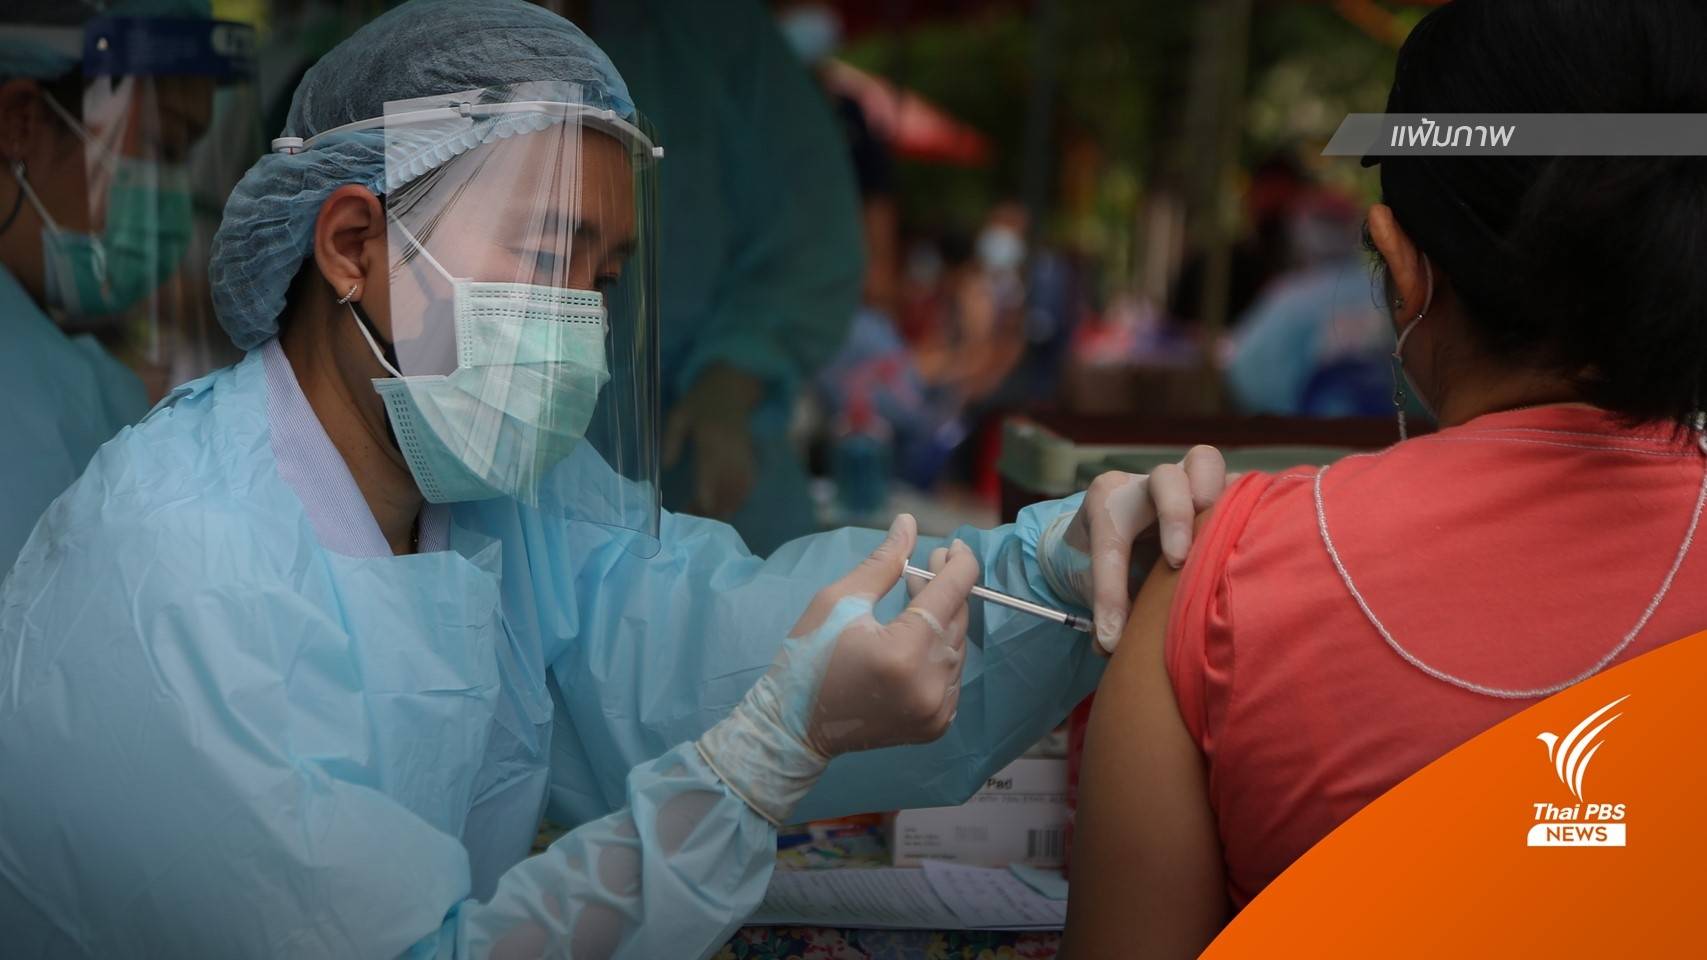 "5 องค์กรวิชาชีพ" หนุนให้ประชาชนฉีดวัคซีนเข็มกระตุ้น